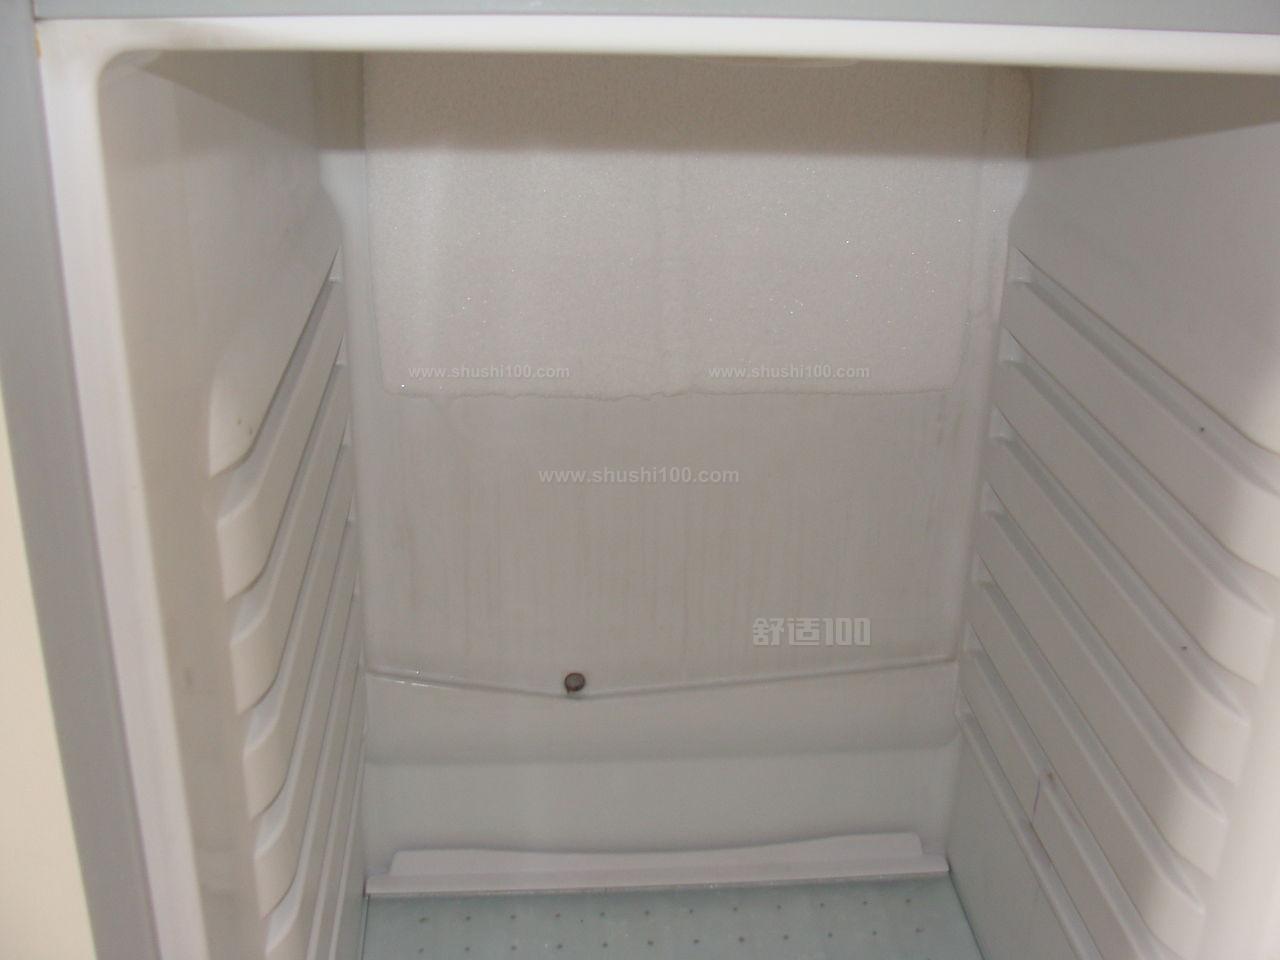 冰箱排水孔在哪里—冰箱排水孔位置